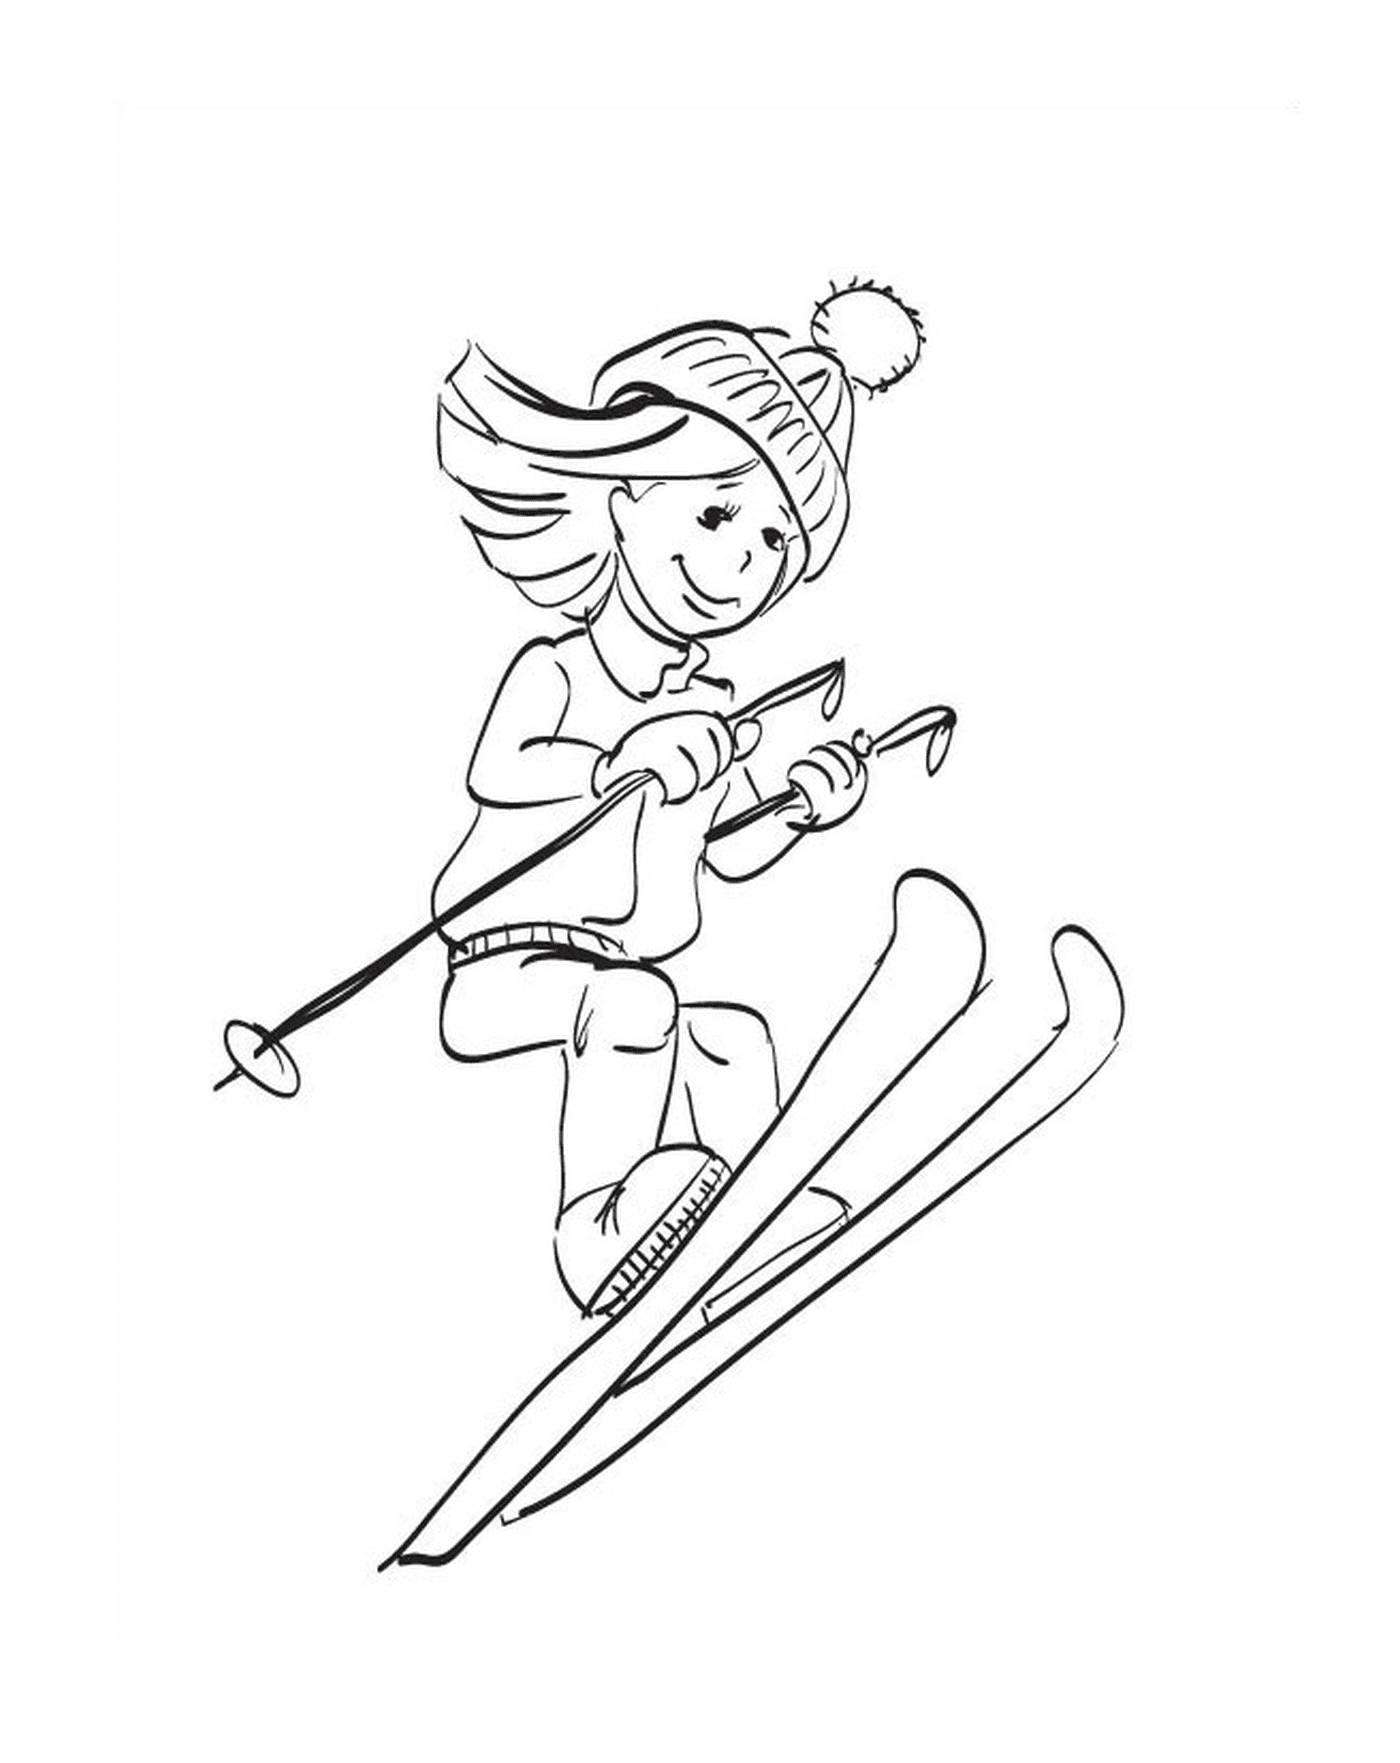   Sport d'hiver, ski, fille qui descend une pente 